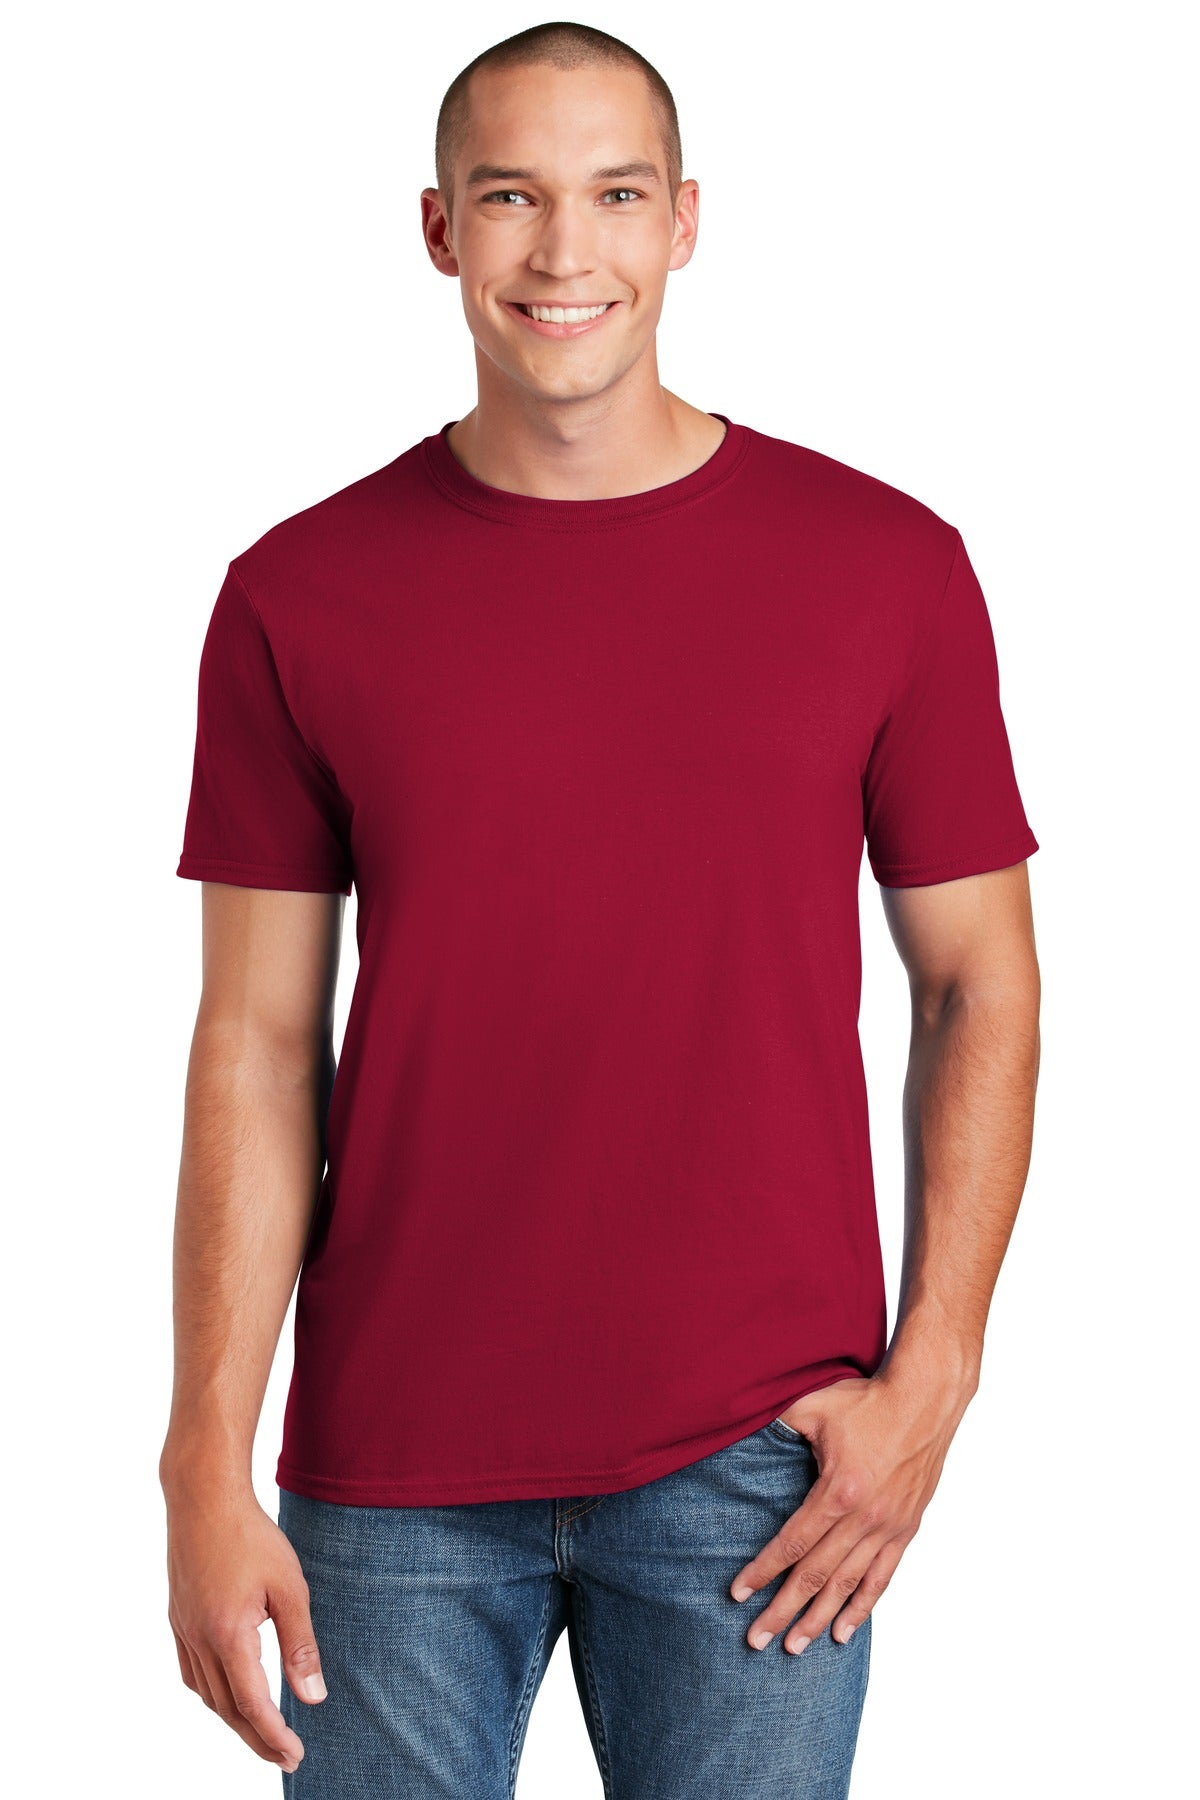 T-Shirts Cardinal Gildan